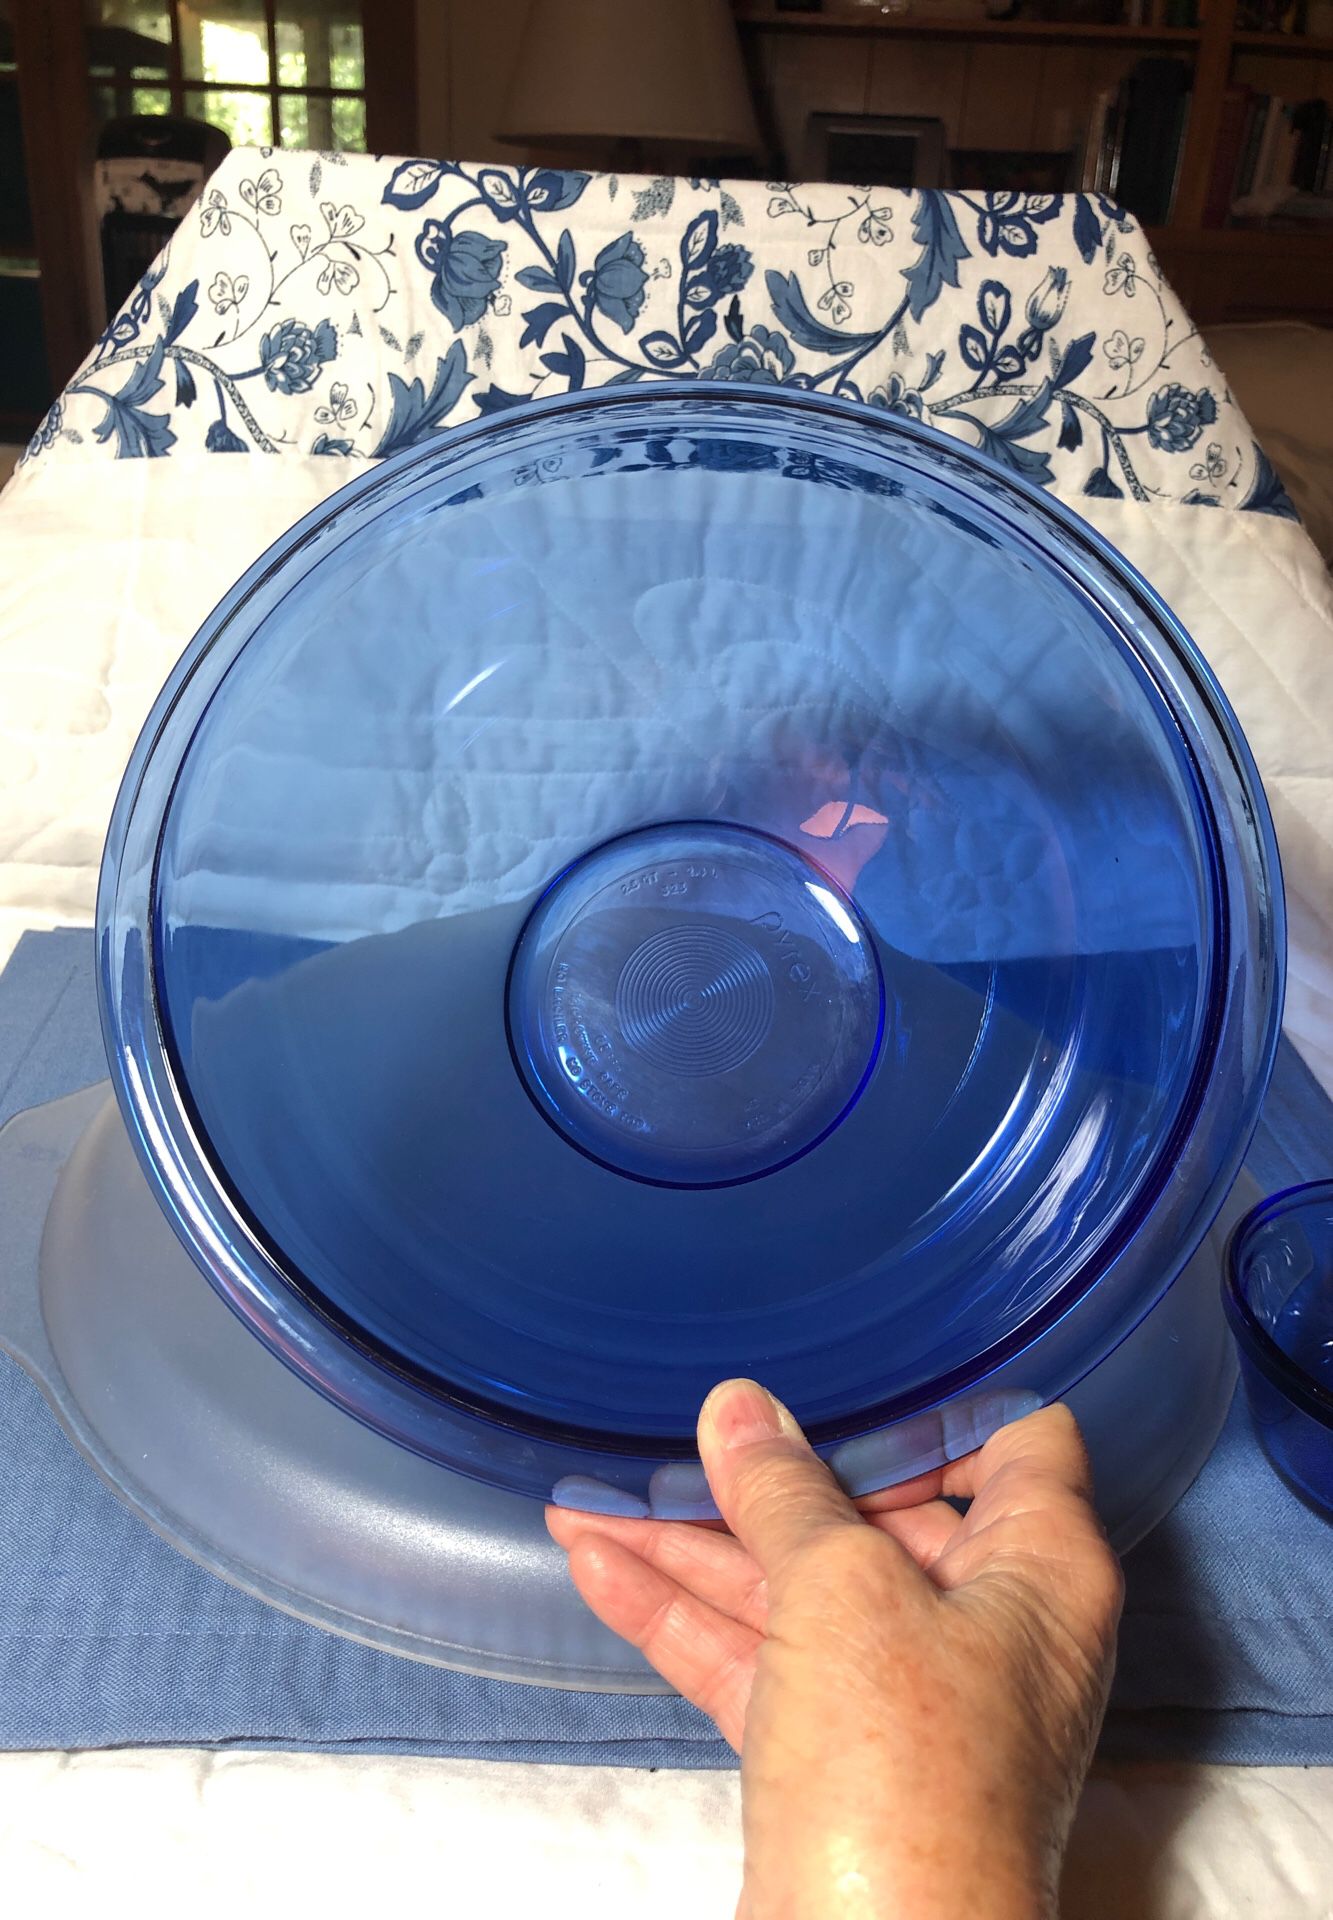 Pyrex cobalt blue mixing bowl with custard cup